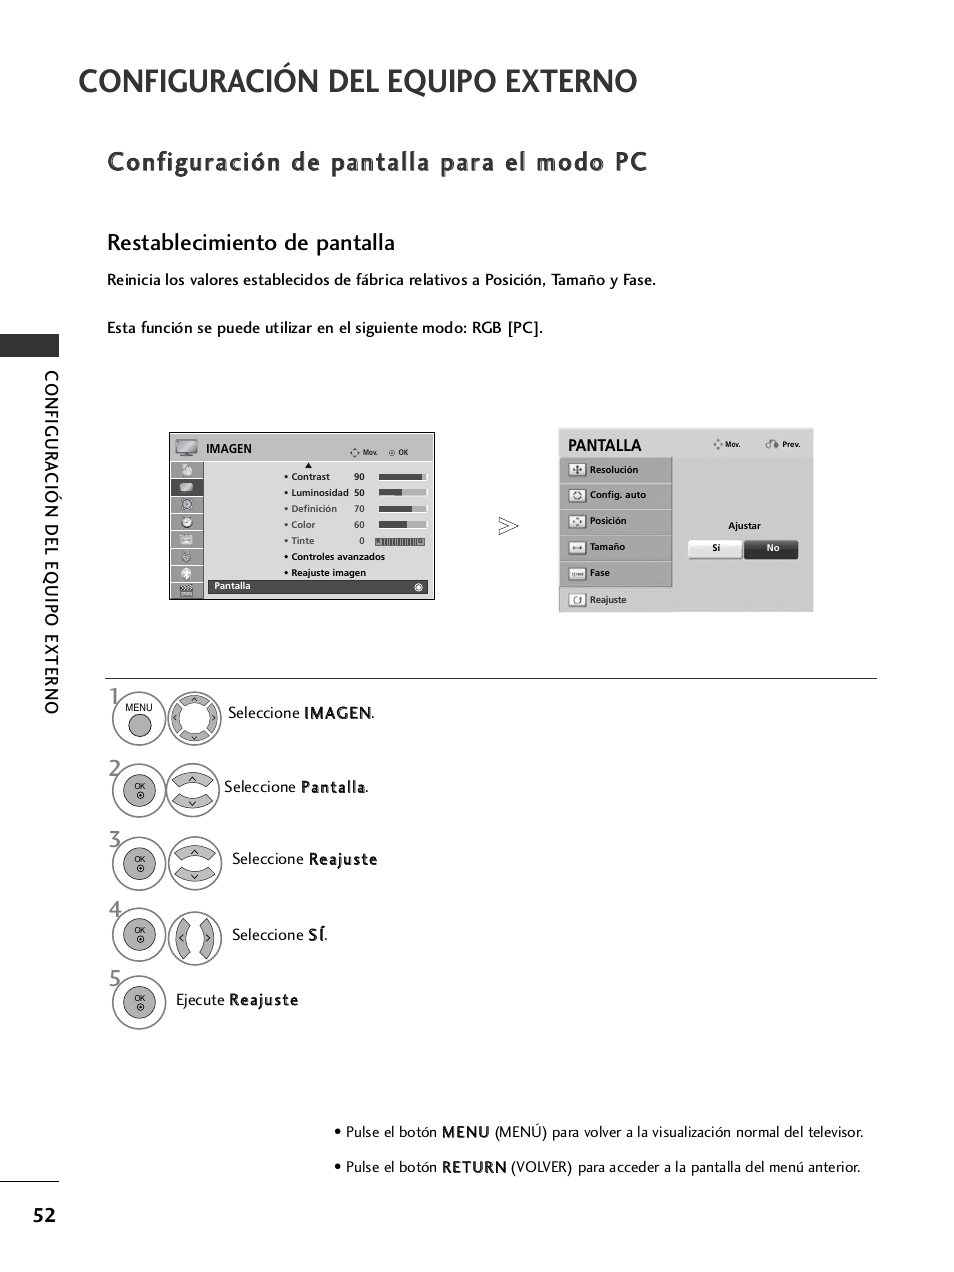 Configuración de pantalla para el modo pc, Configuración del equipo externo, Restablecimiento de pantalla | LG 32LH40 Manual del usuario | Página 54 / 180